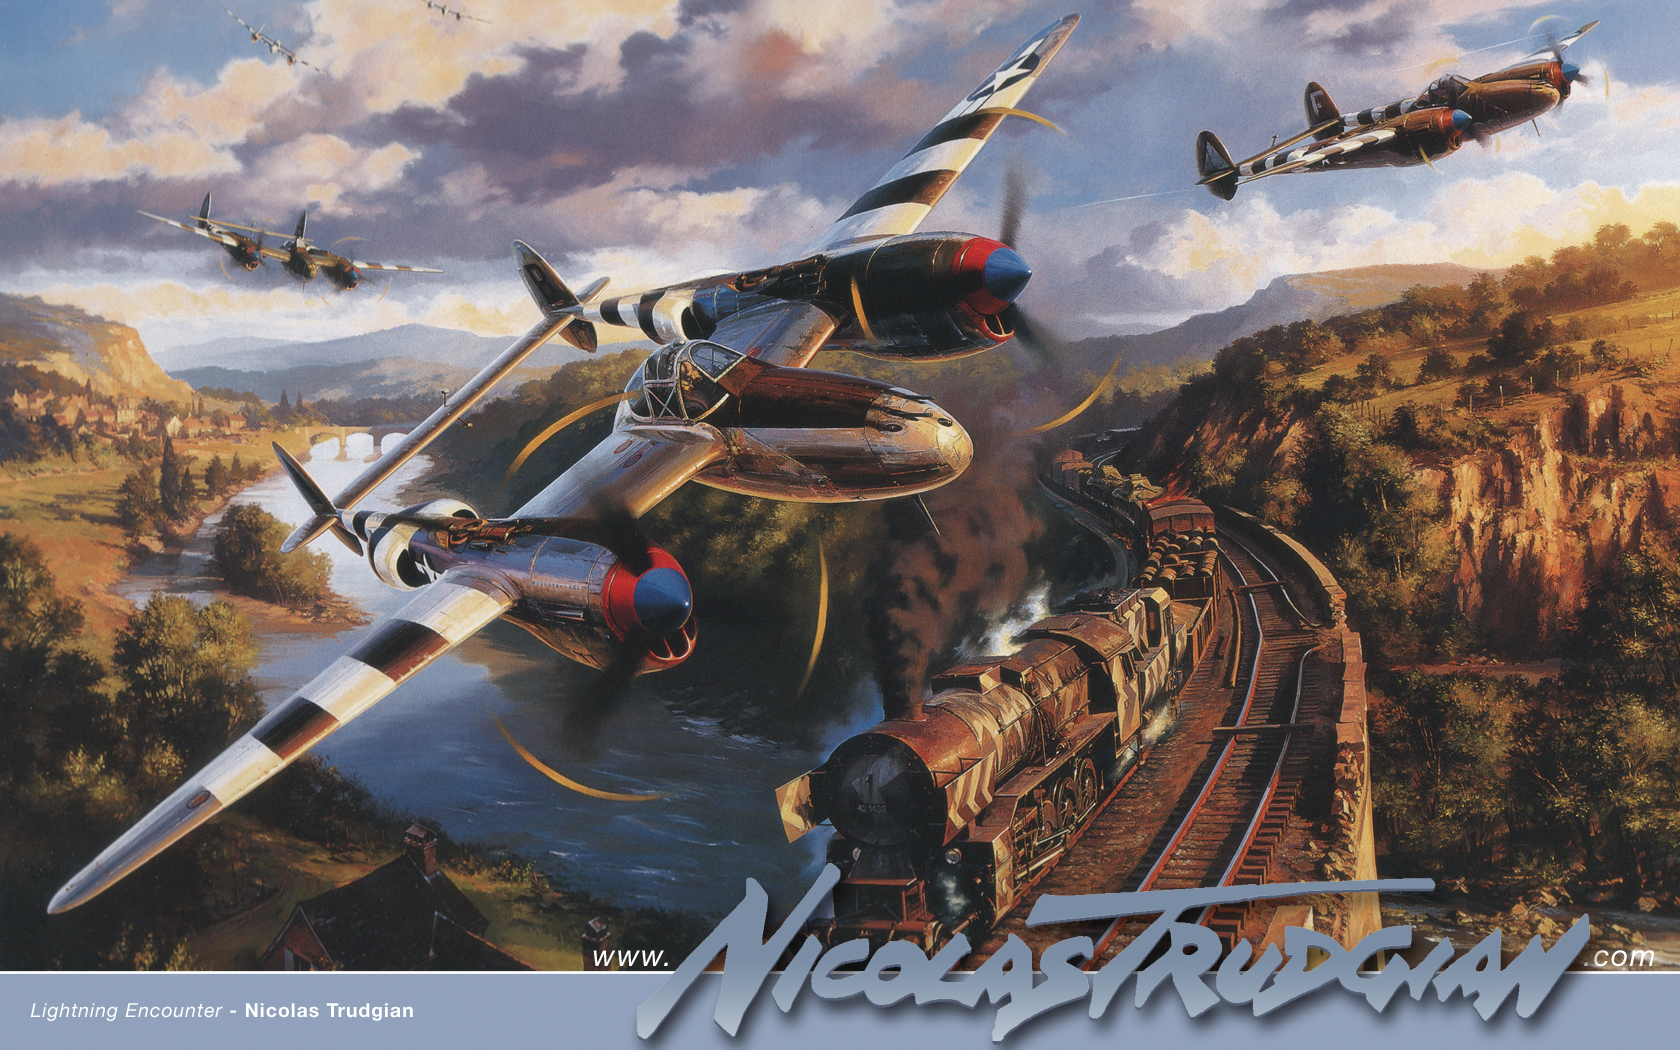 Подборка рисунков на тему авиации времен Второй Мировой Войны